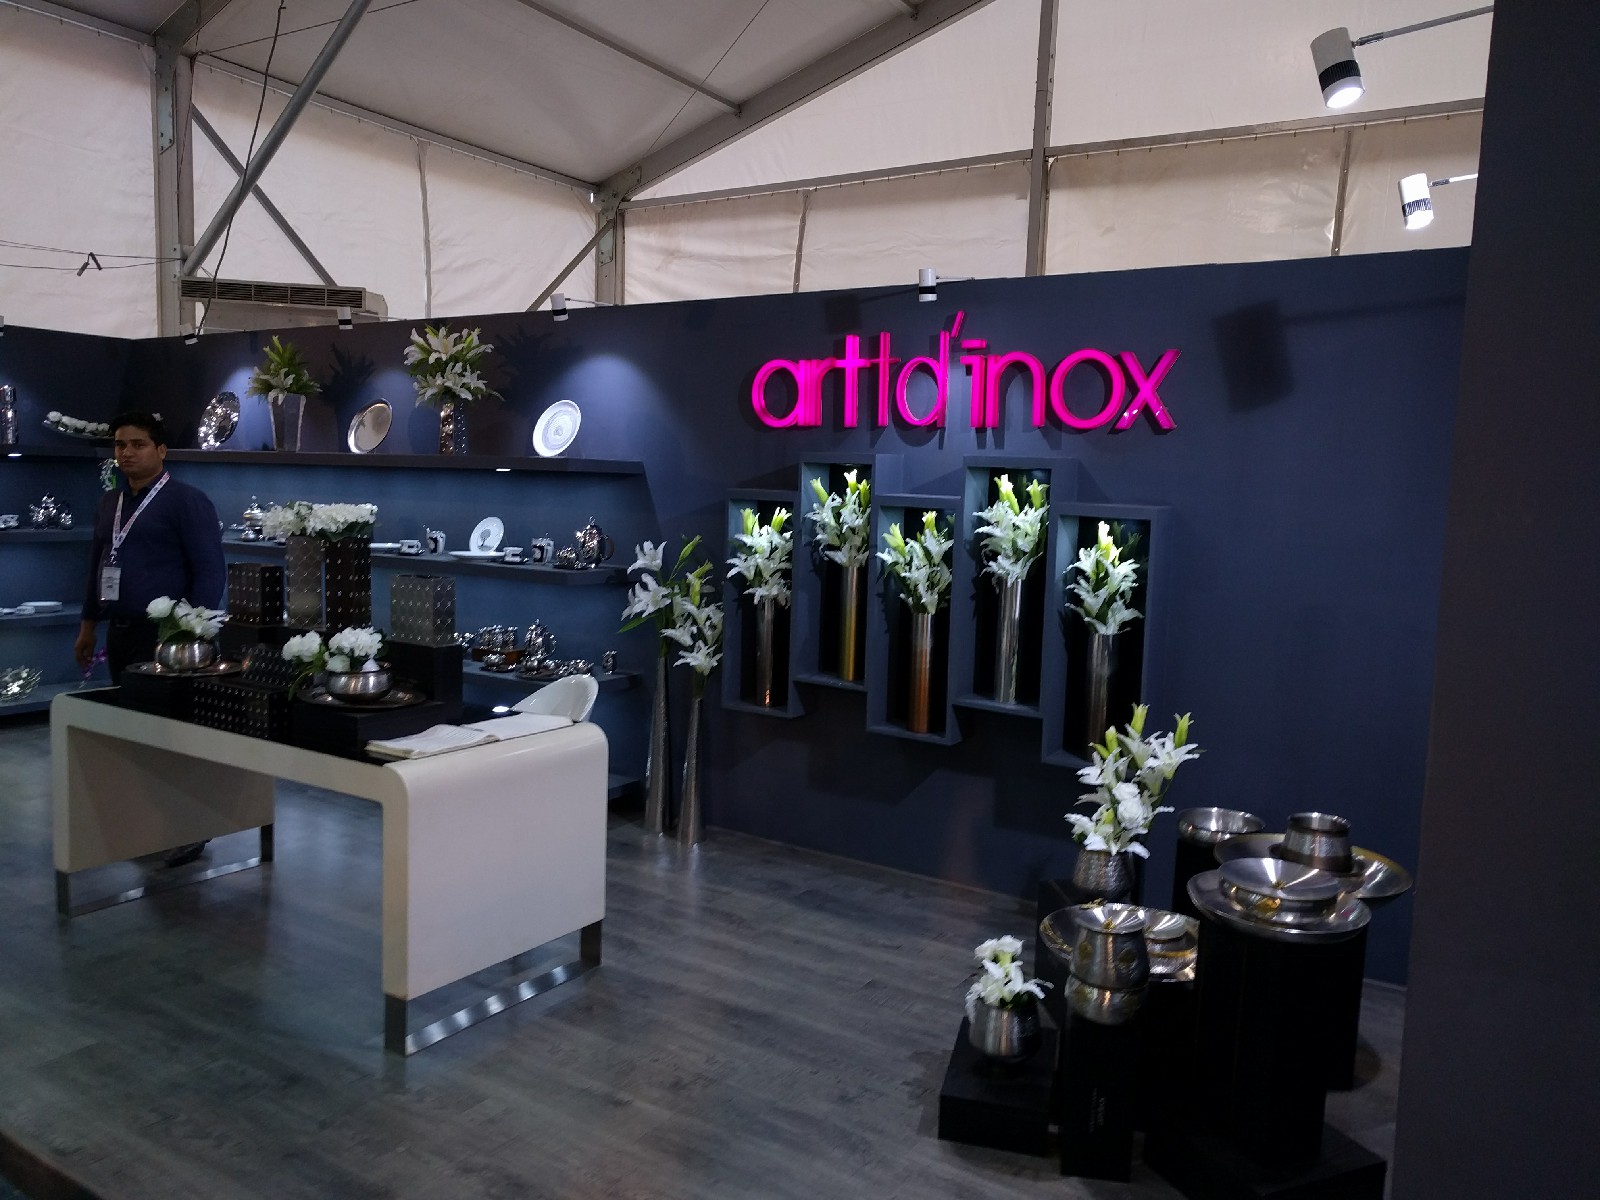 Arttd_inox – Make In India, Mumbai